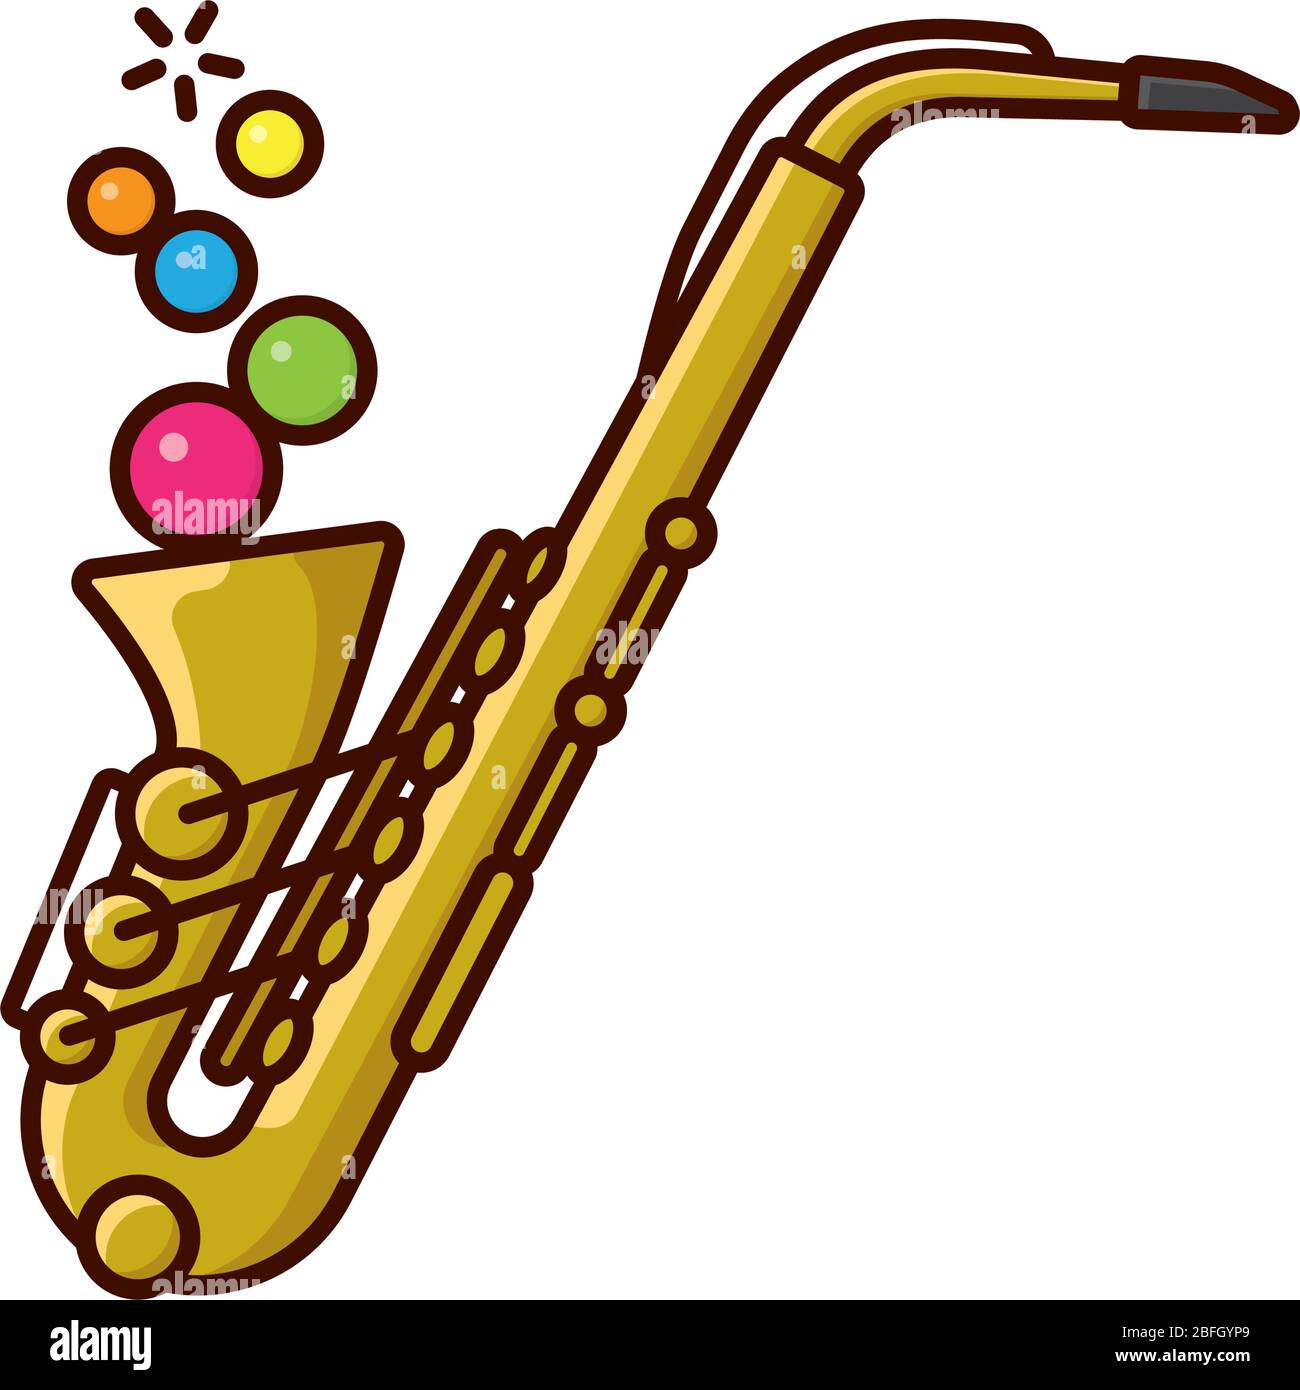 Saxophon bläst bunte Blasen isolierte Vektorgrafik für den Internationalen Jazztag am 30. April. Symbol für zeitgenössische Musik. Stock Vektor